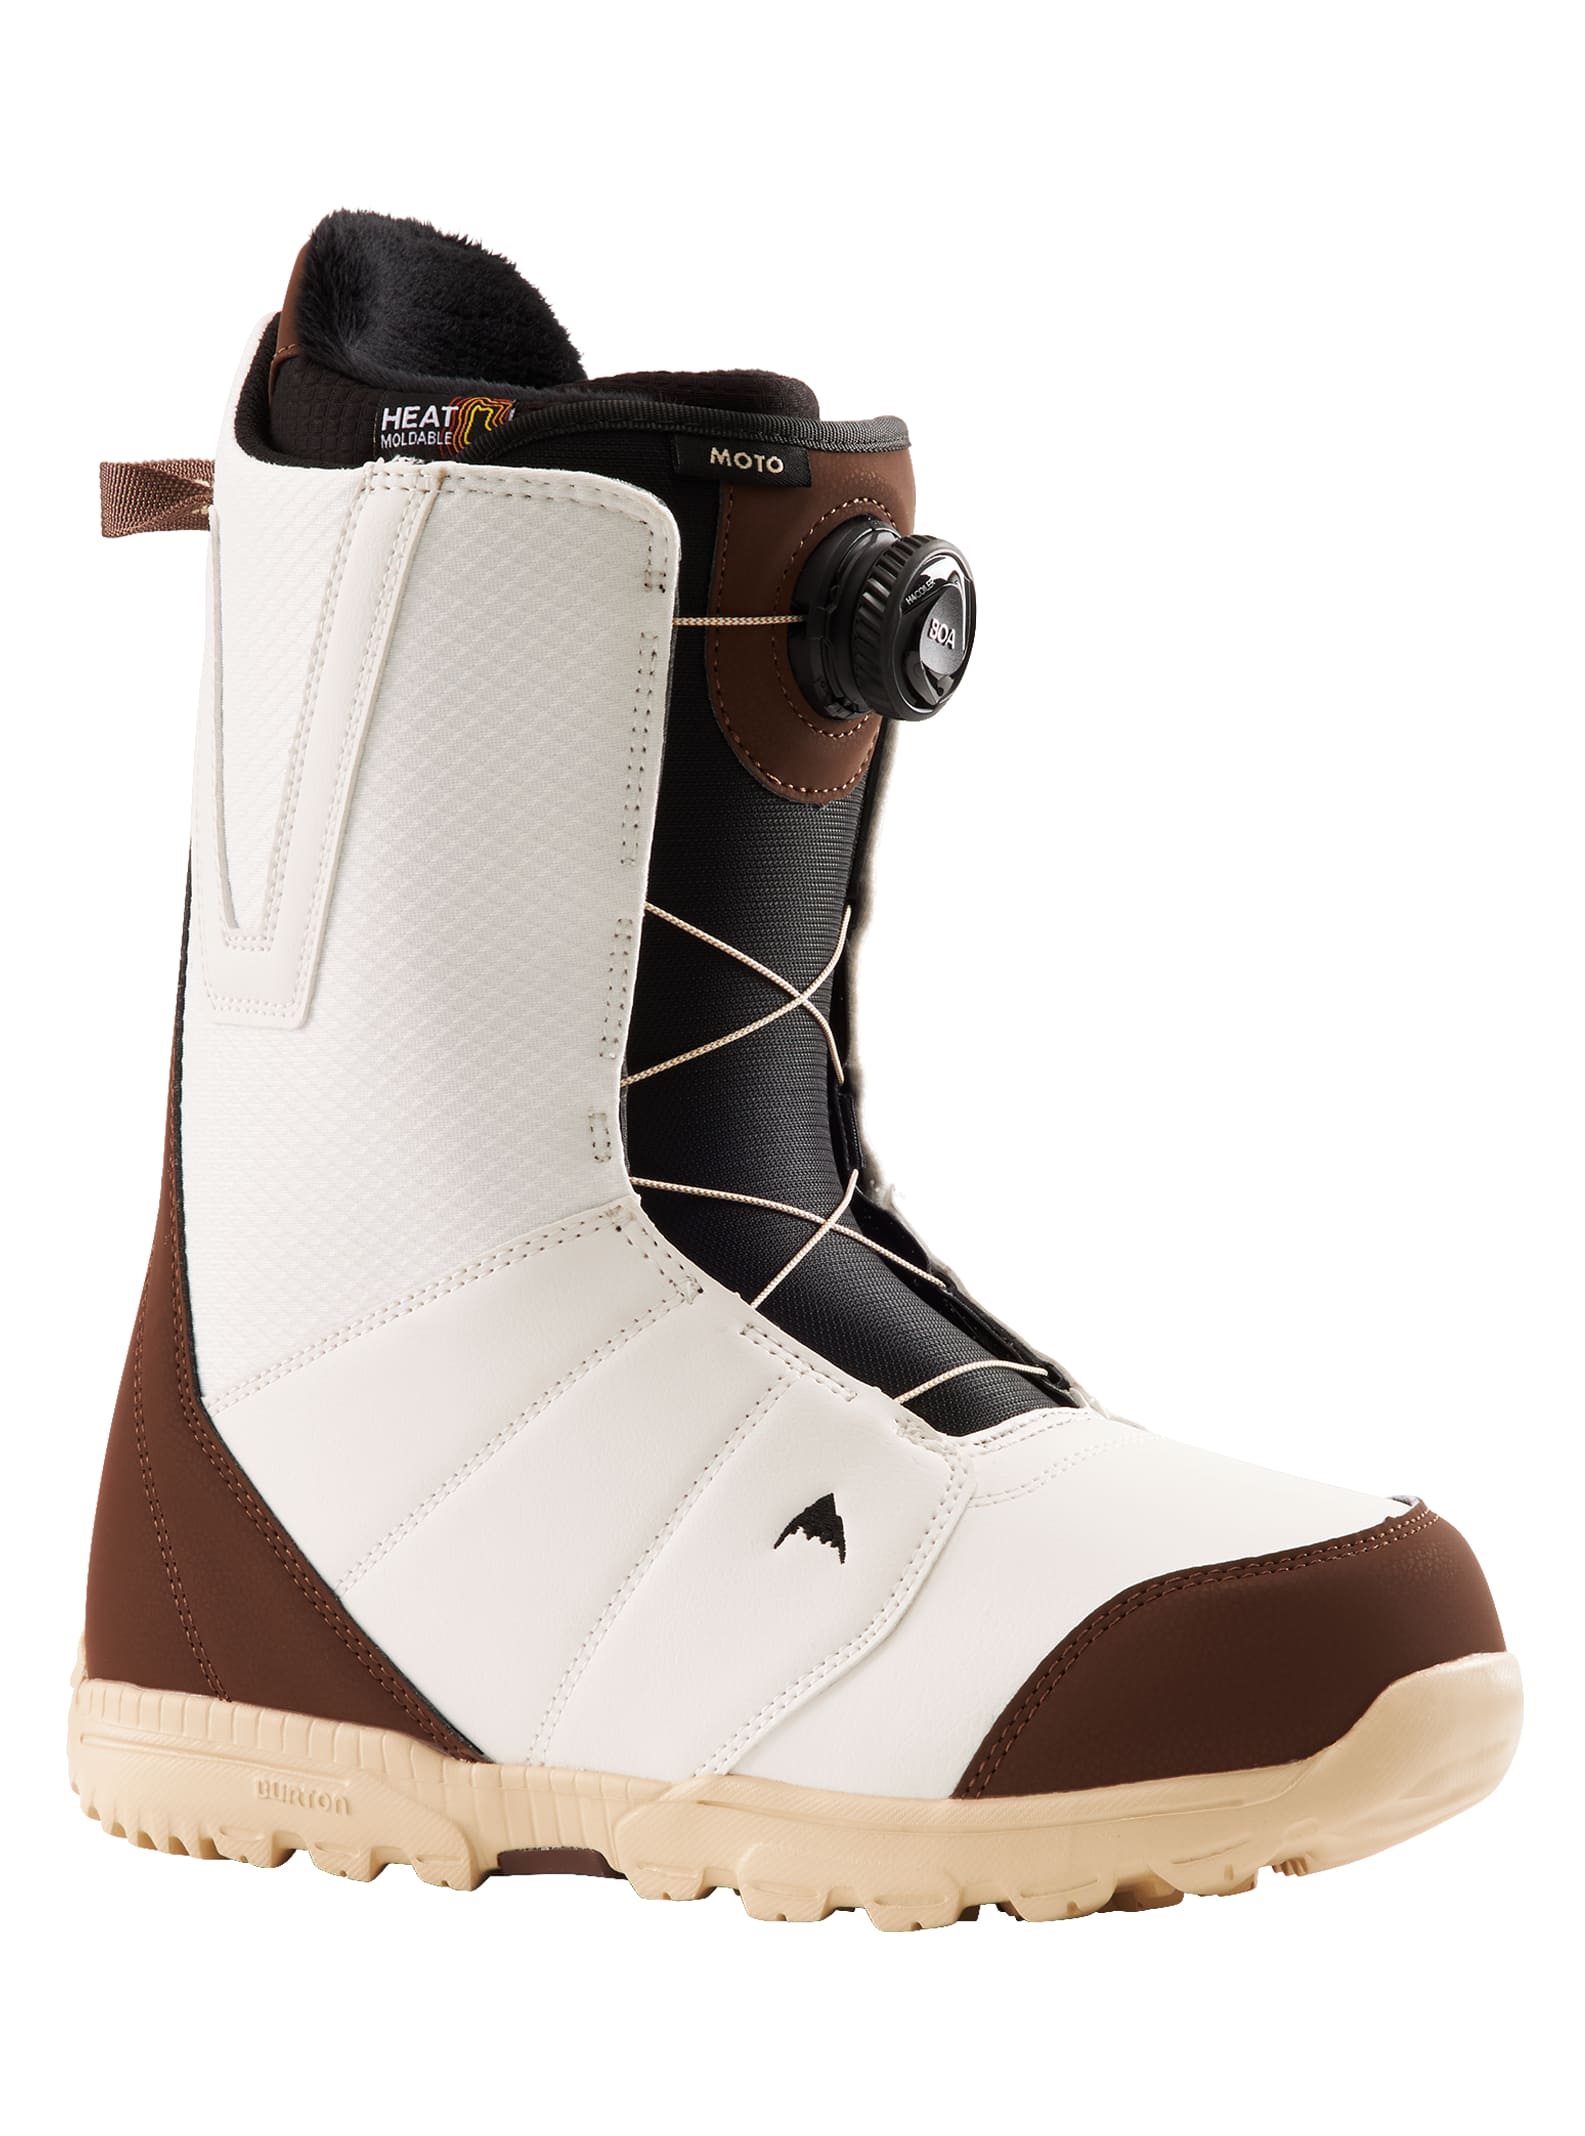 Men's Burton Moto BOA® Snowboard Boots | Burton.com Winter 2022 BE